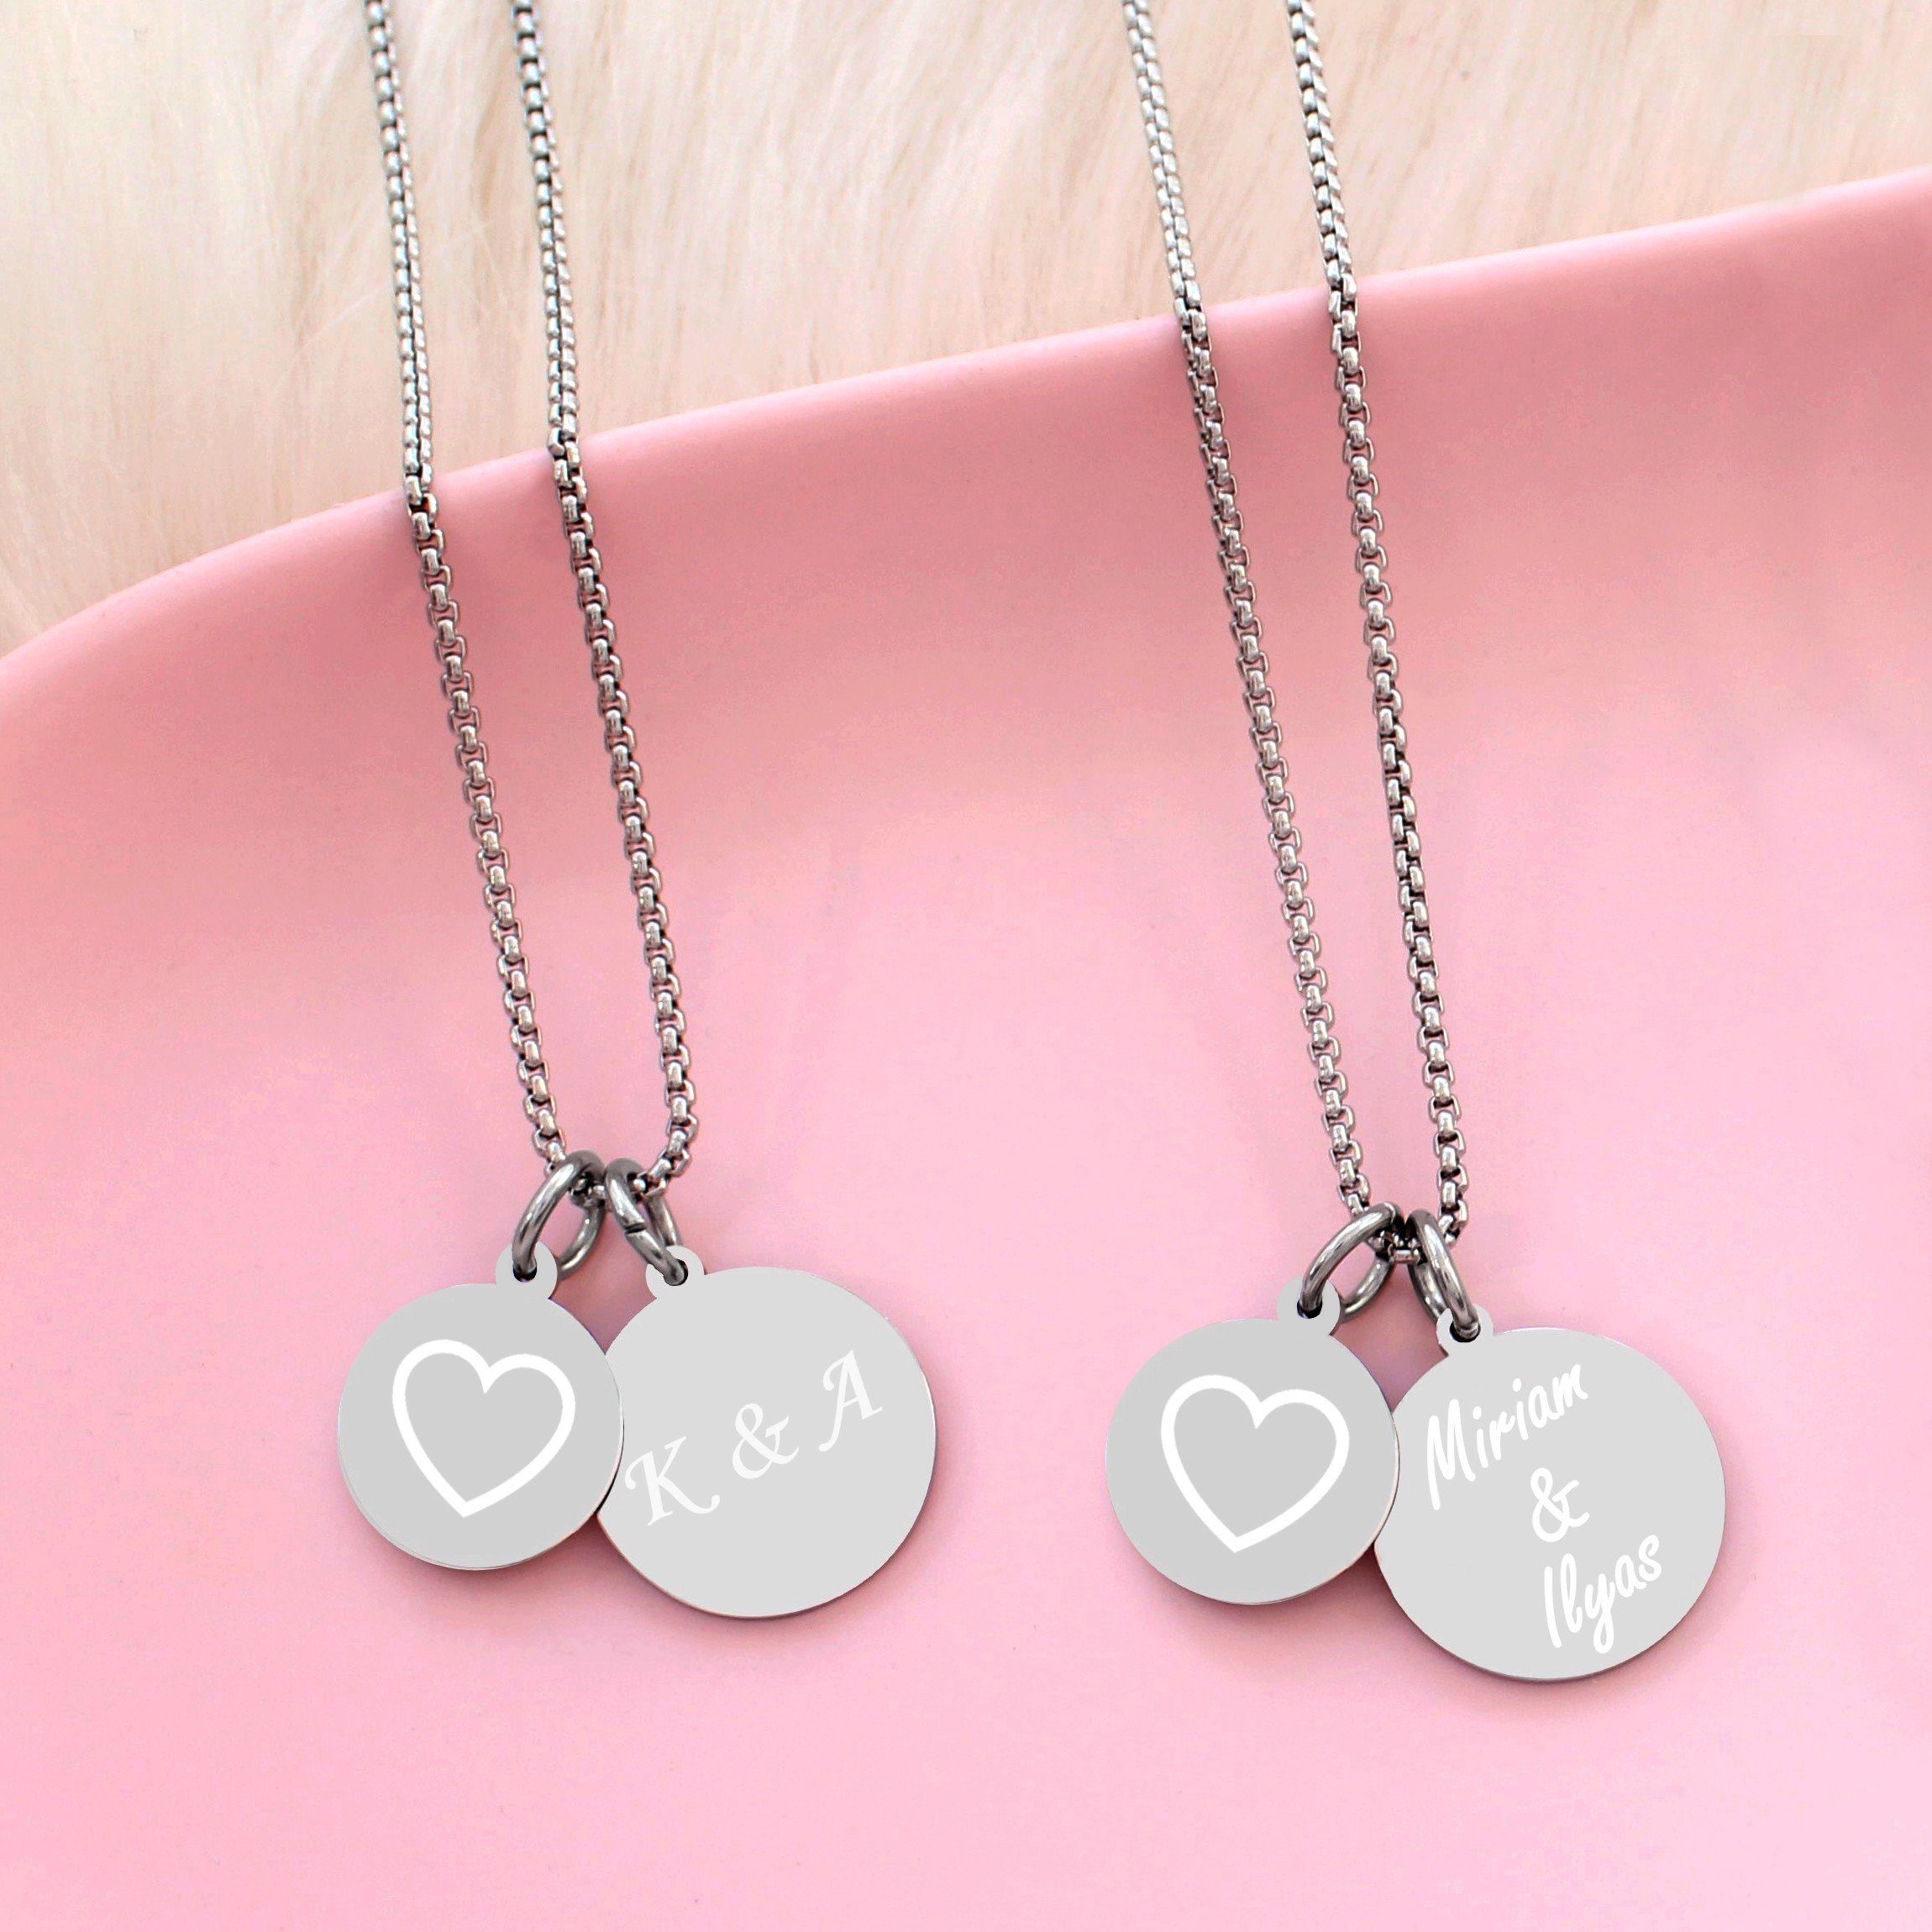 mit & gold) Kette Personalisierte silber Herzkette mit Herz (Namenskette Anhänger Gravur Timando Geschenk, mit Gravur Namen, Farben: Kette Plättchen